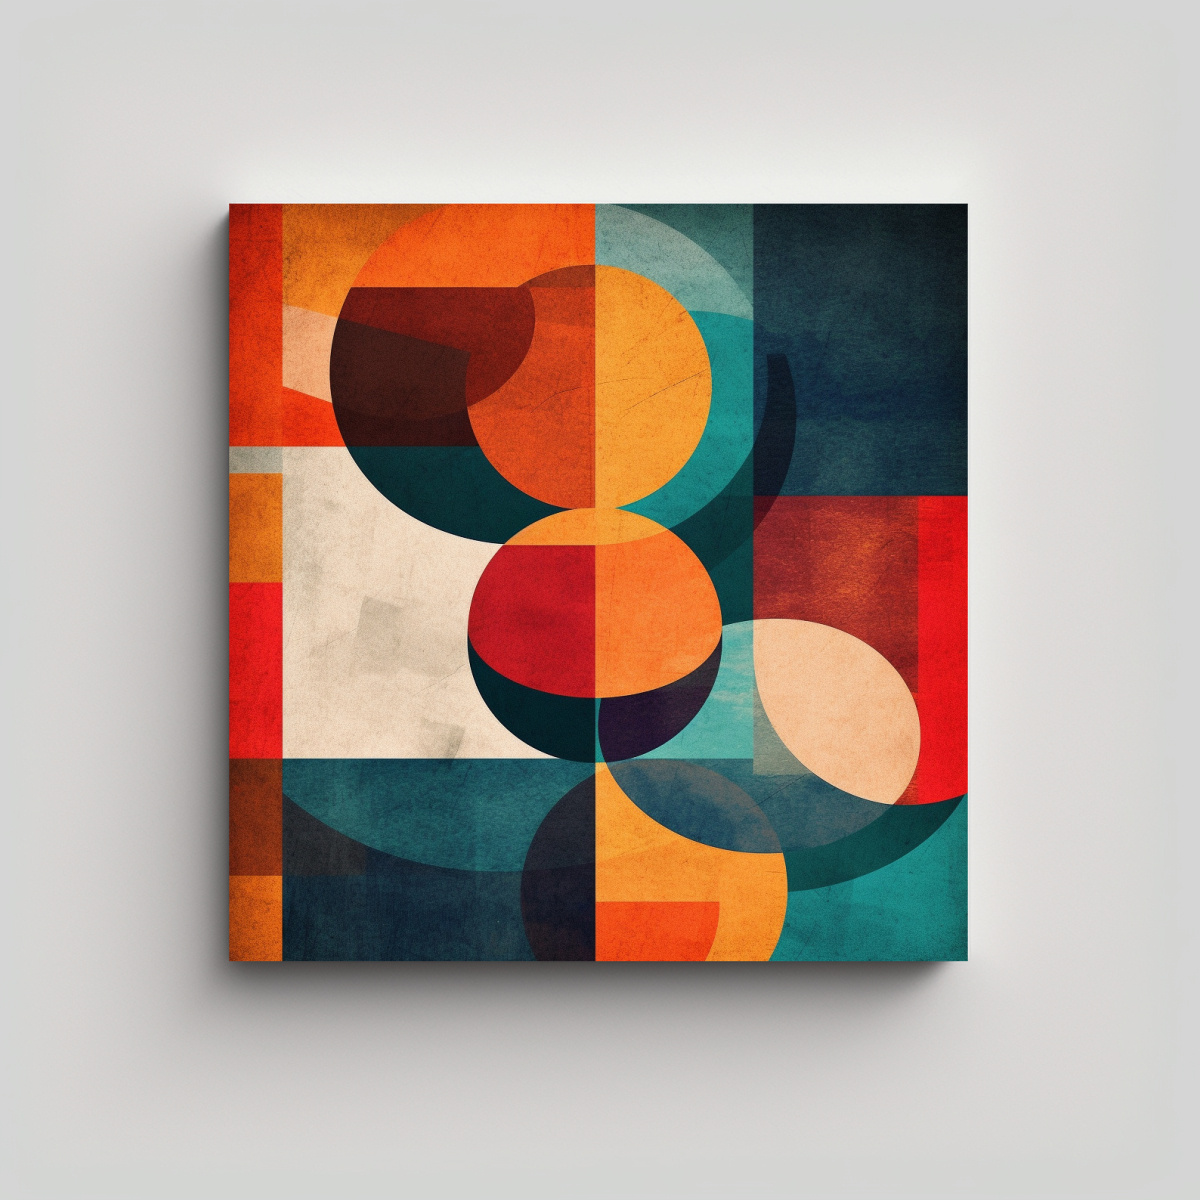 Cuadro De Decoración De Arte De Pared Equilibrio Visual Con Formas Superpuestas En Colores